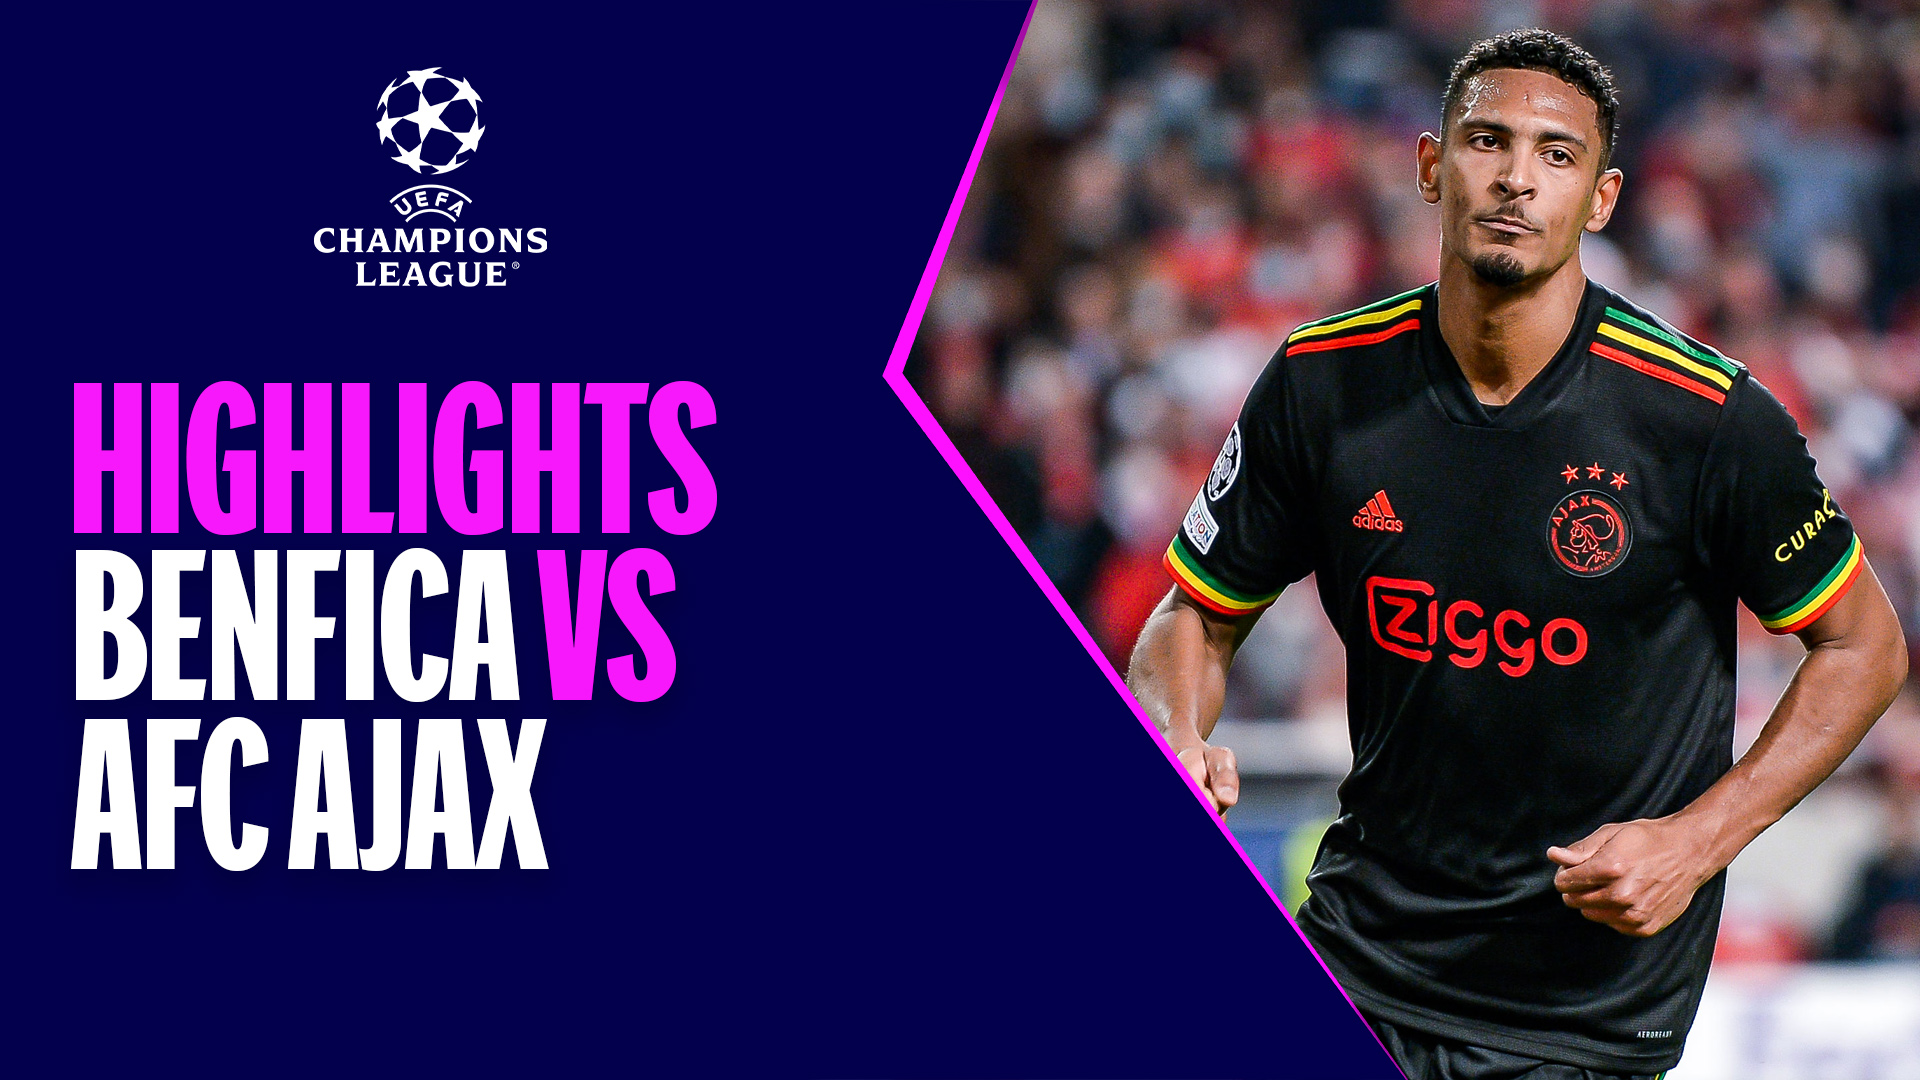 Benfica - AFC Ajax | Haller ghi bàn và phản lưới - Highlights UEFA Champions League 2021/2022